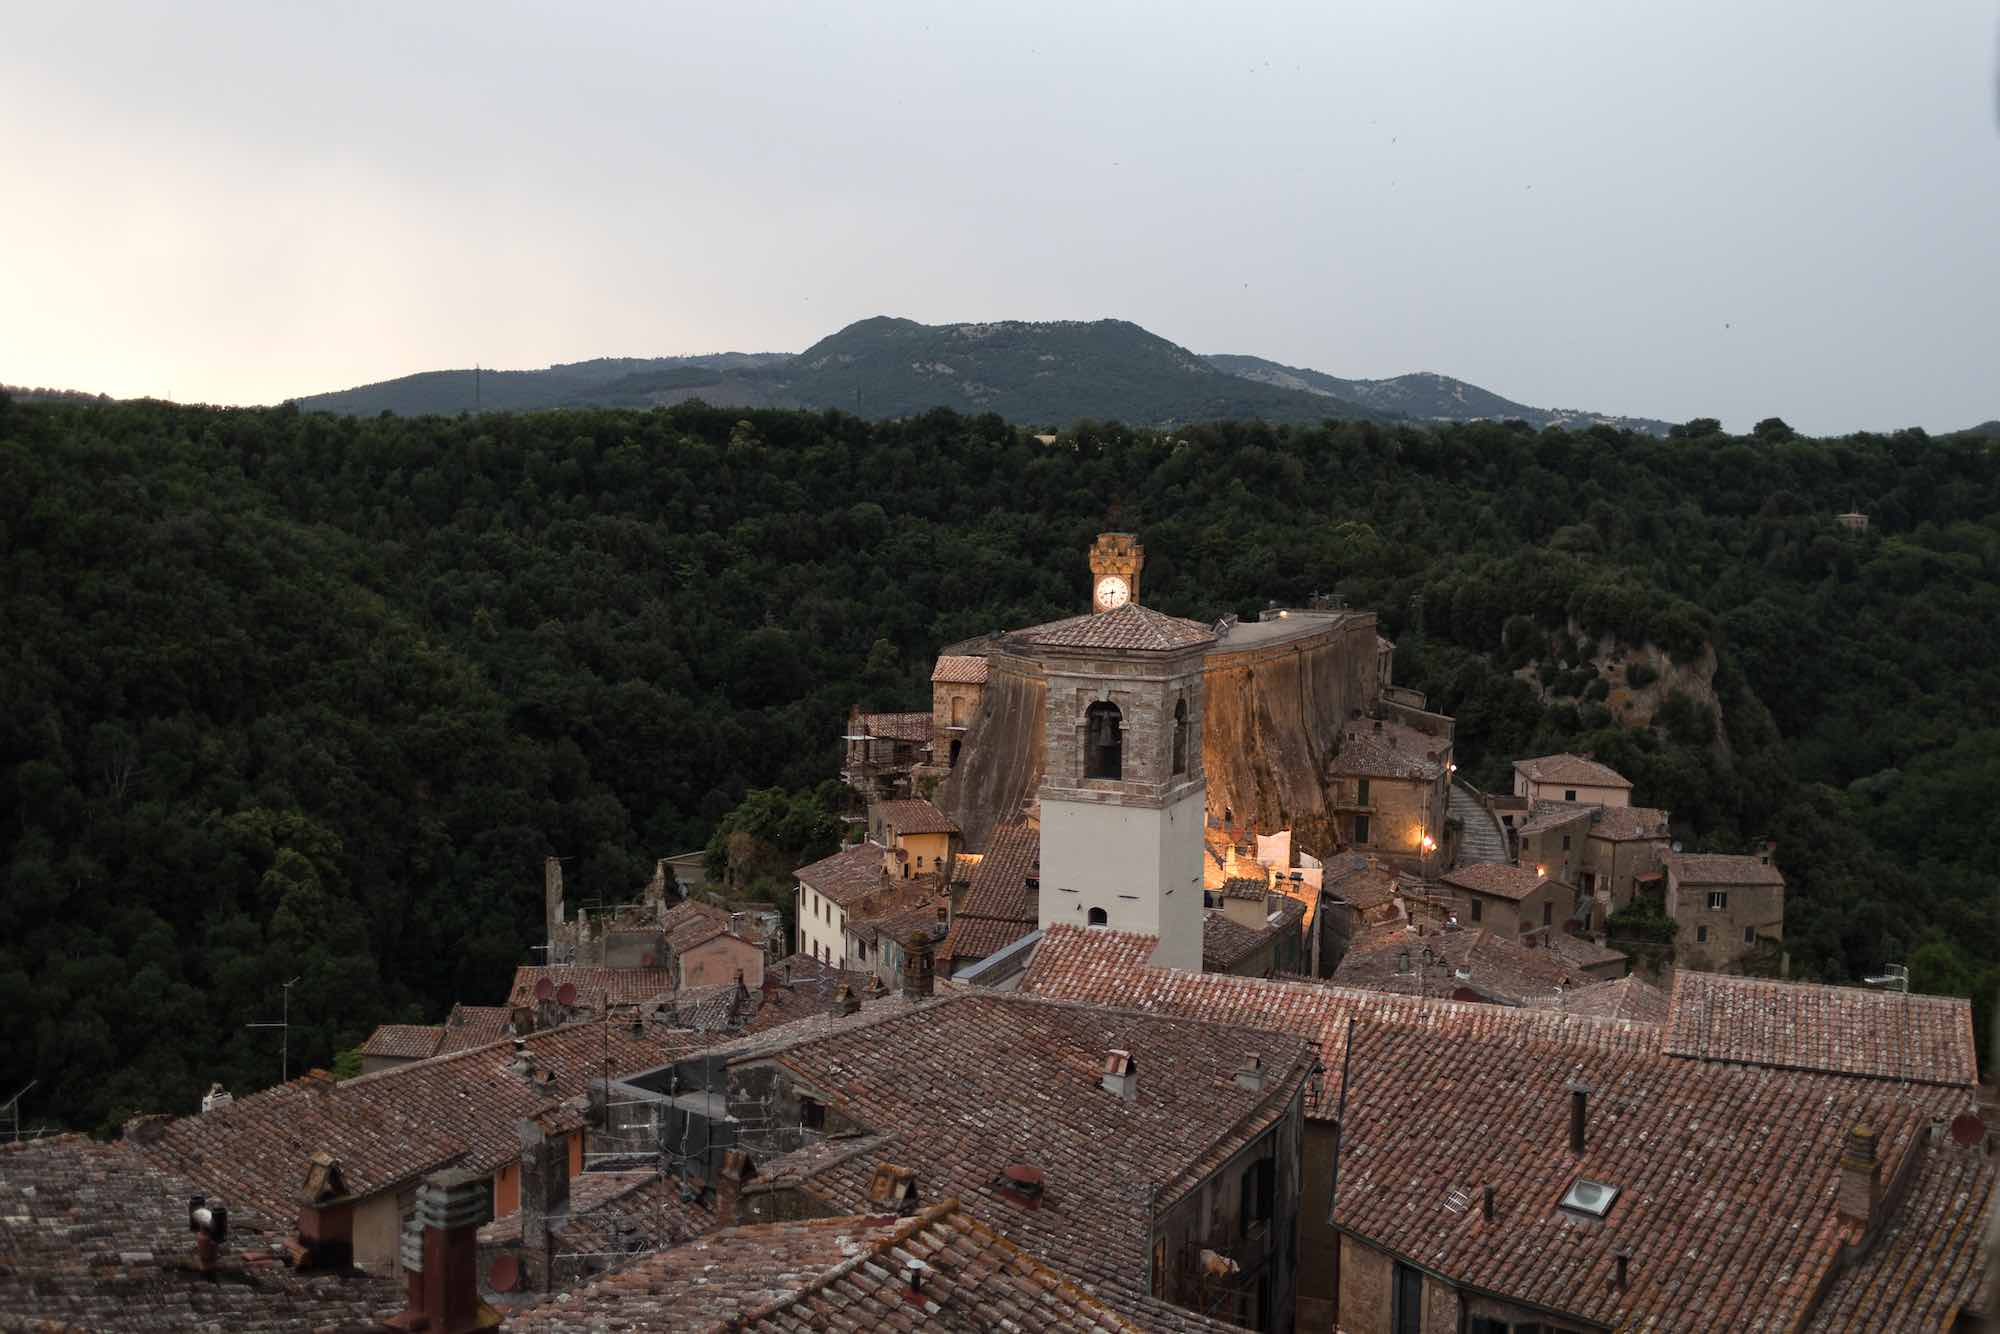 Panorama dalle camere dell'Hotel della Fortezza a Sorano, Toscana